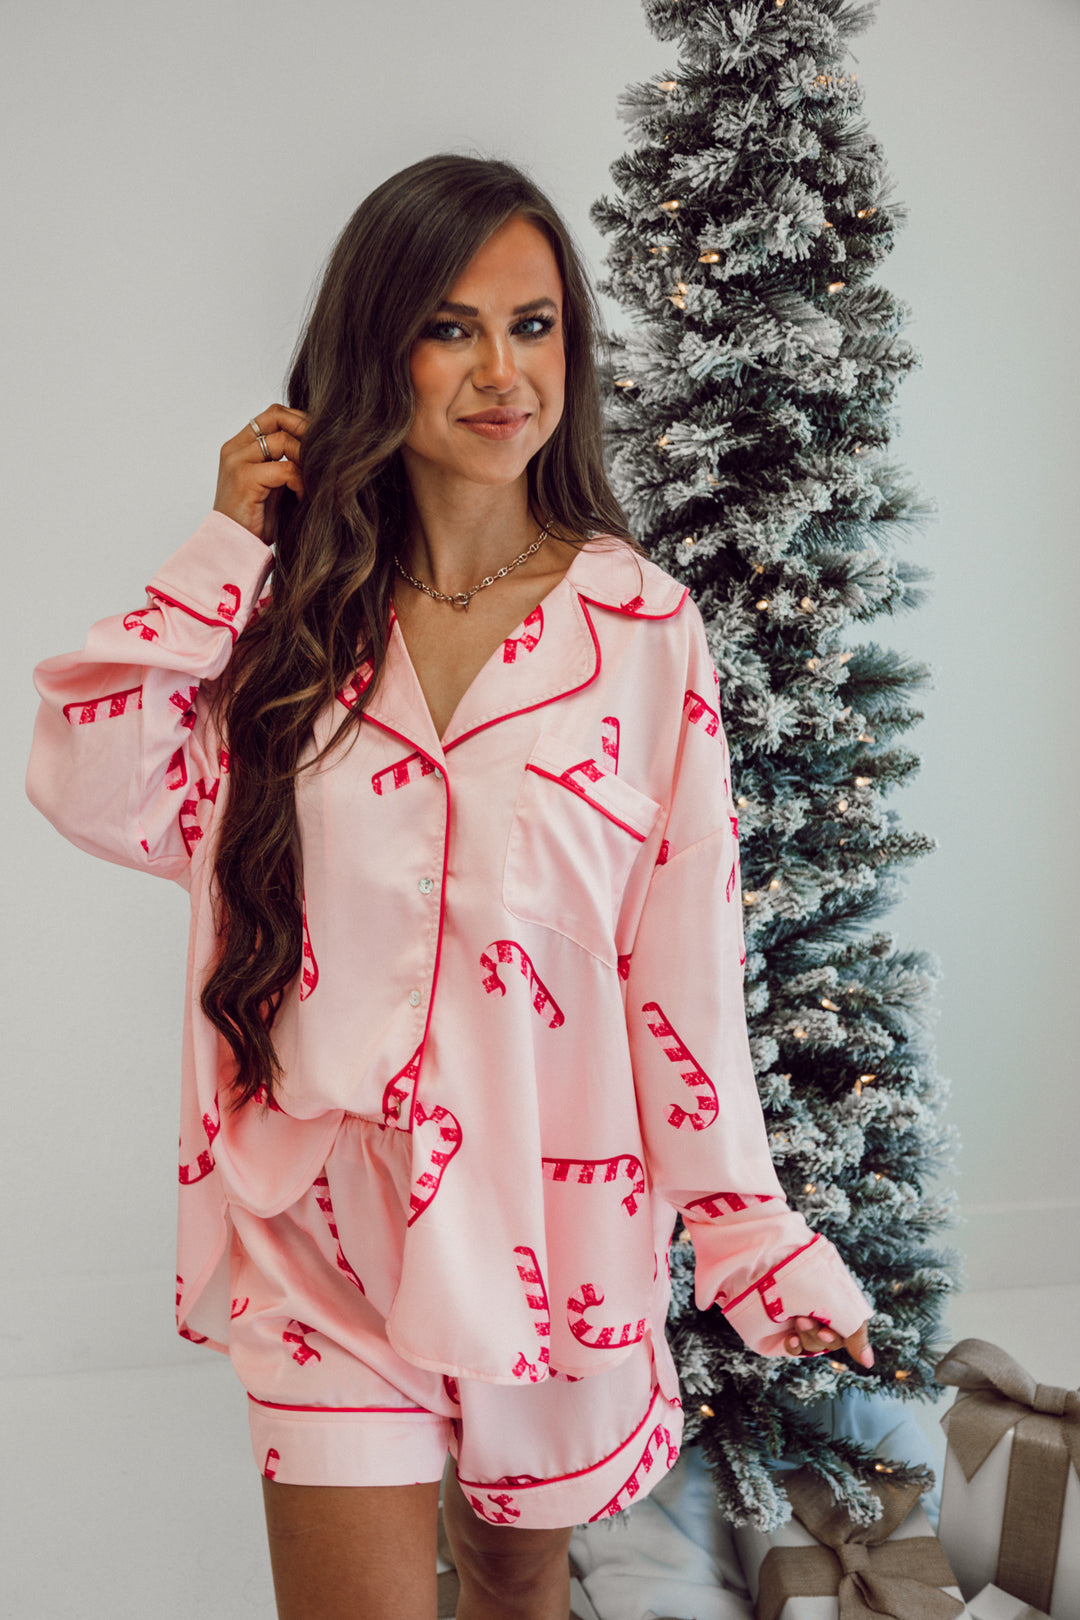 Candy Cane Satin Pajama Set - Light Pink